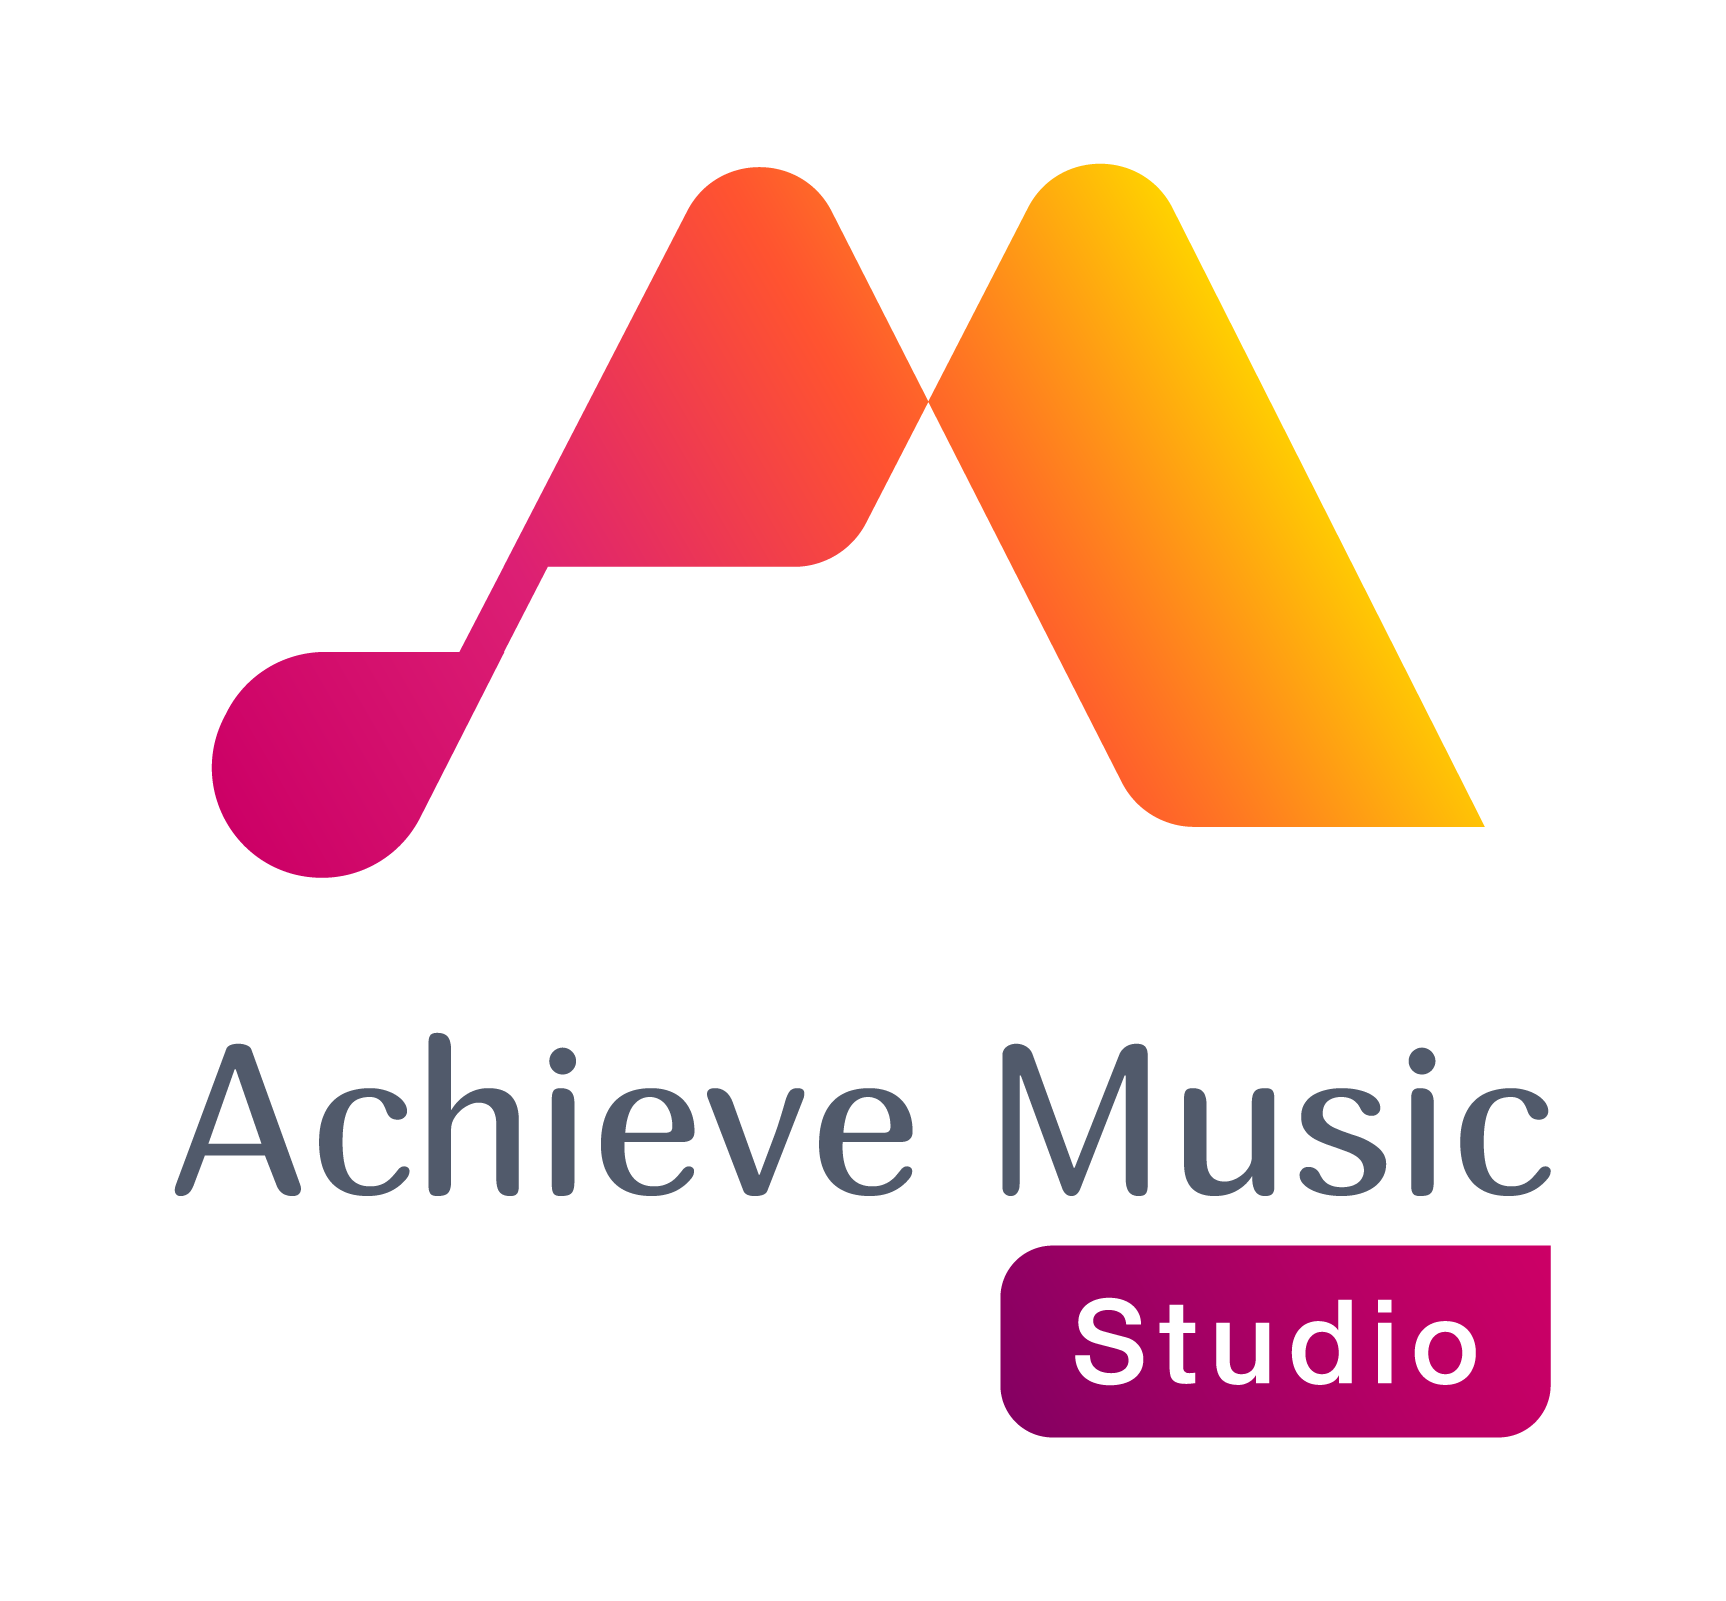 Achieve Music Studio